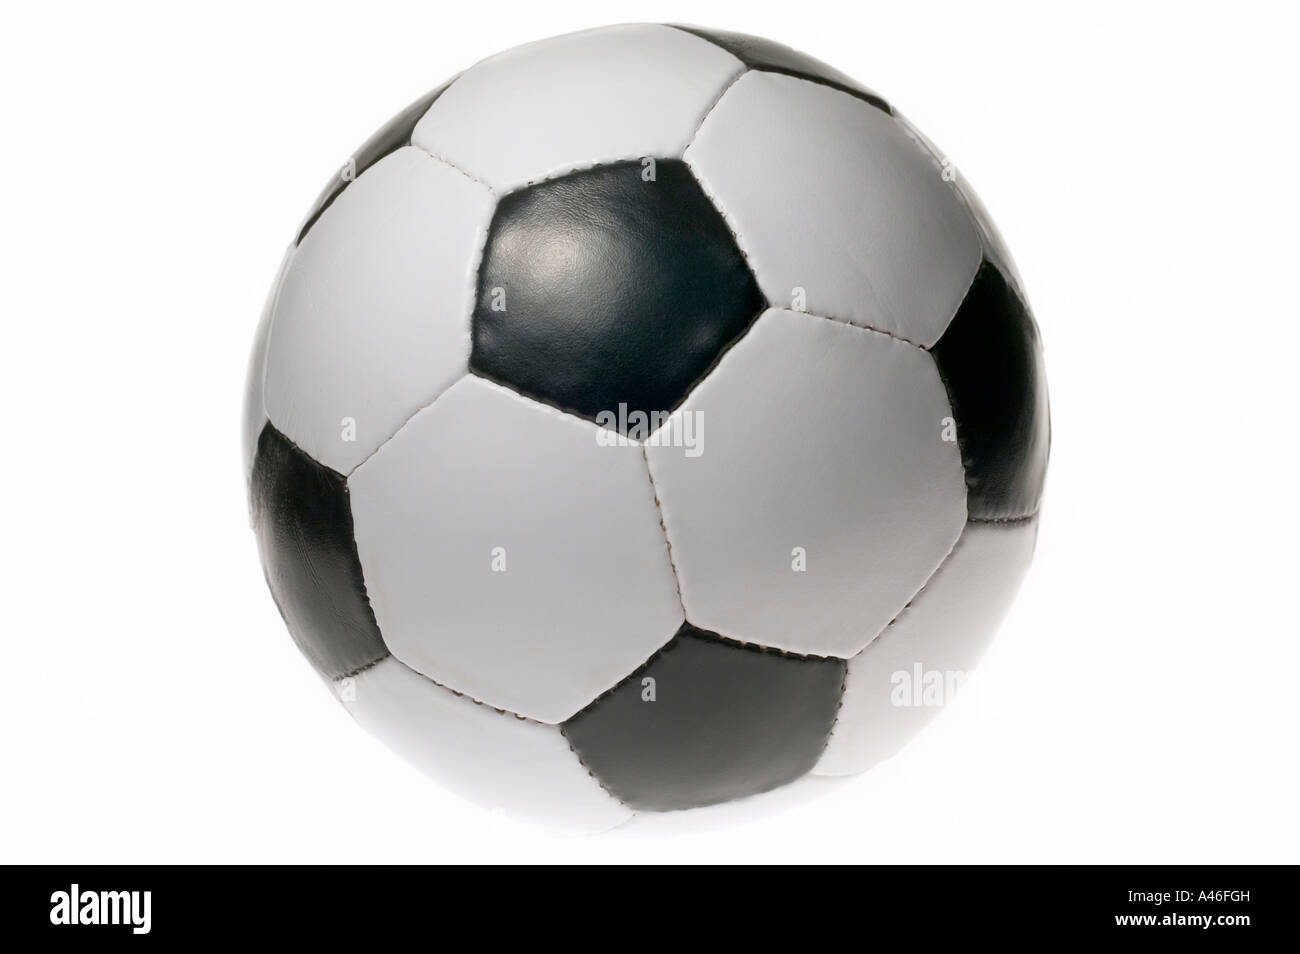 Un ballon de foot sur fond blanc Banque D'Images